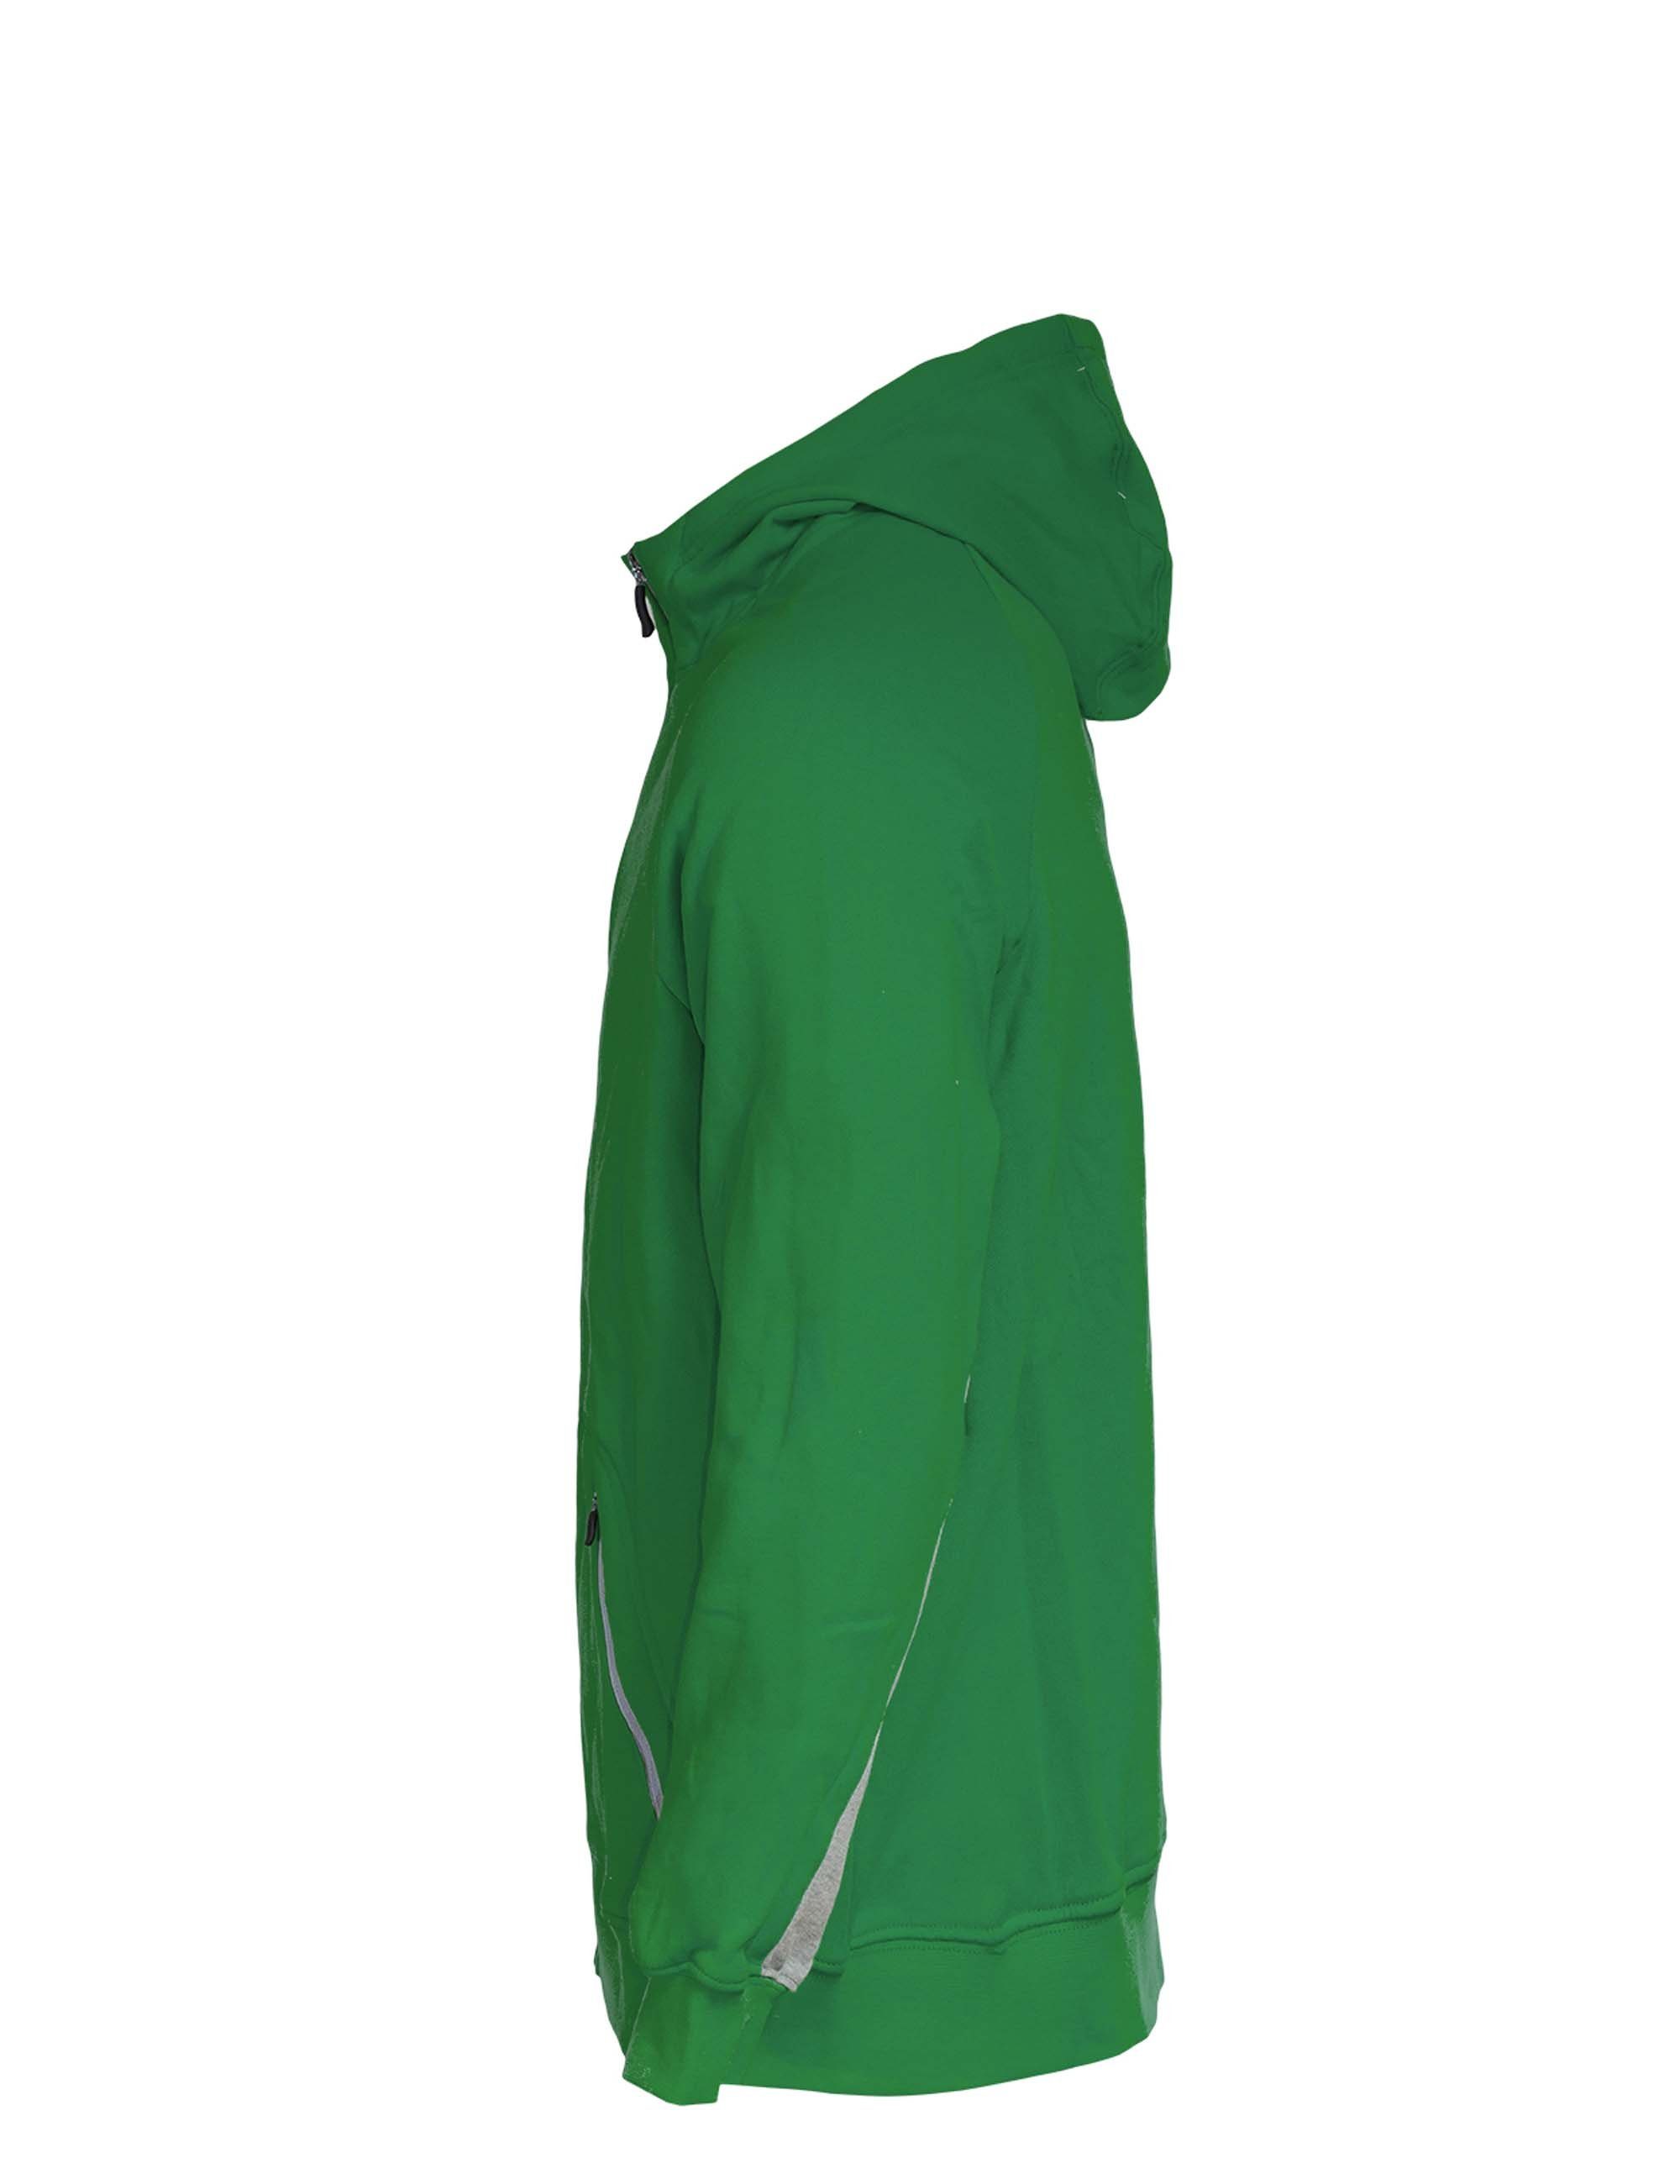 PEAK Sweatjacke Zip Hoody im Look grün sportlichen